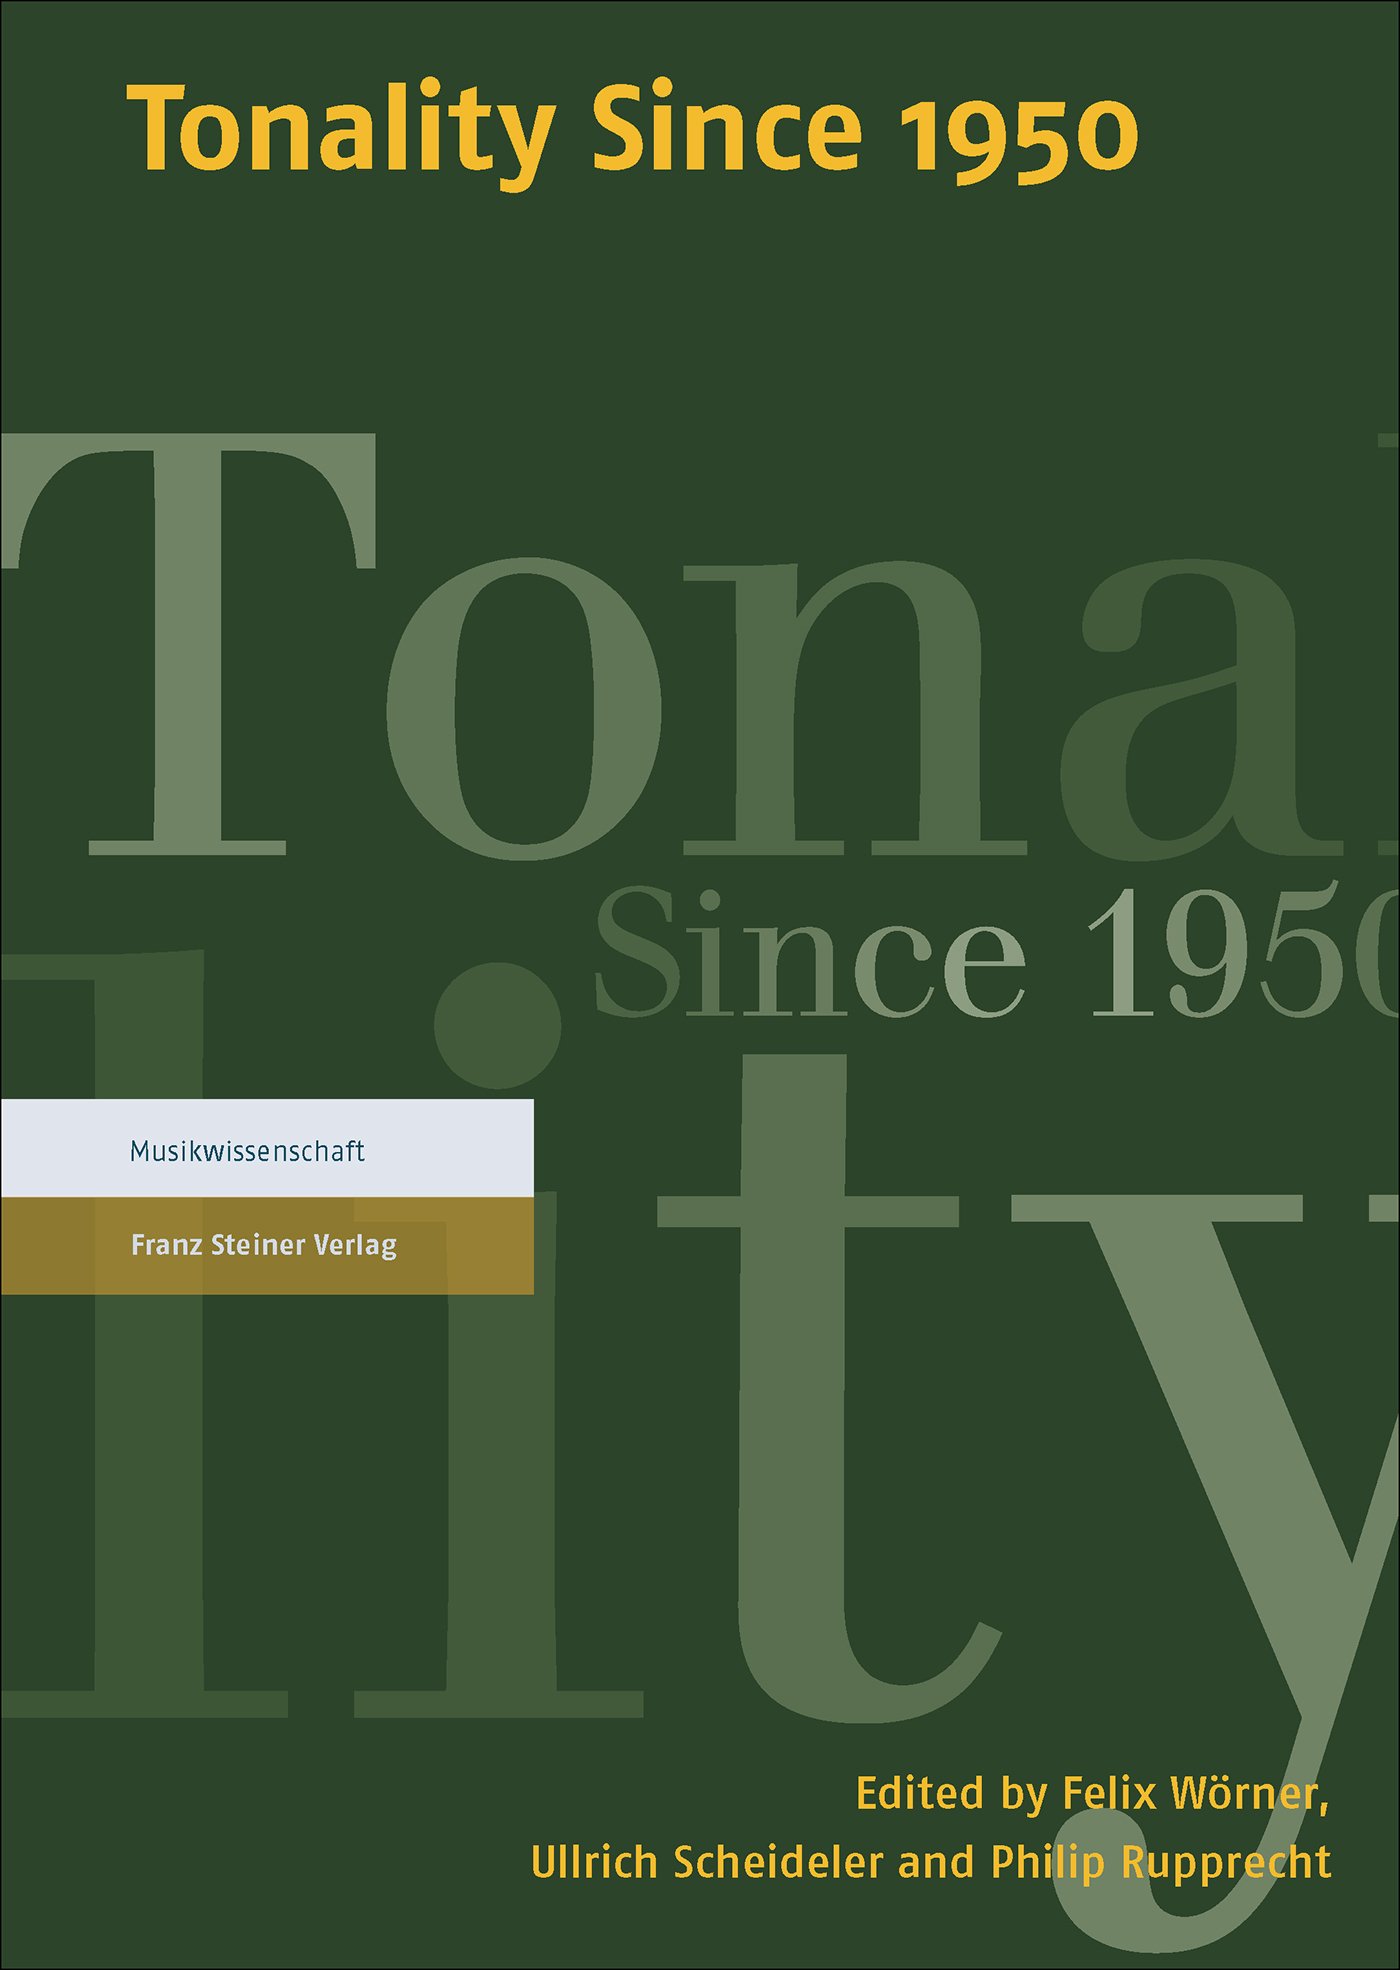 Tonality Since 1950